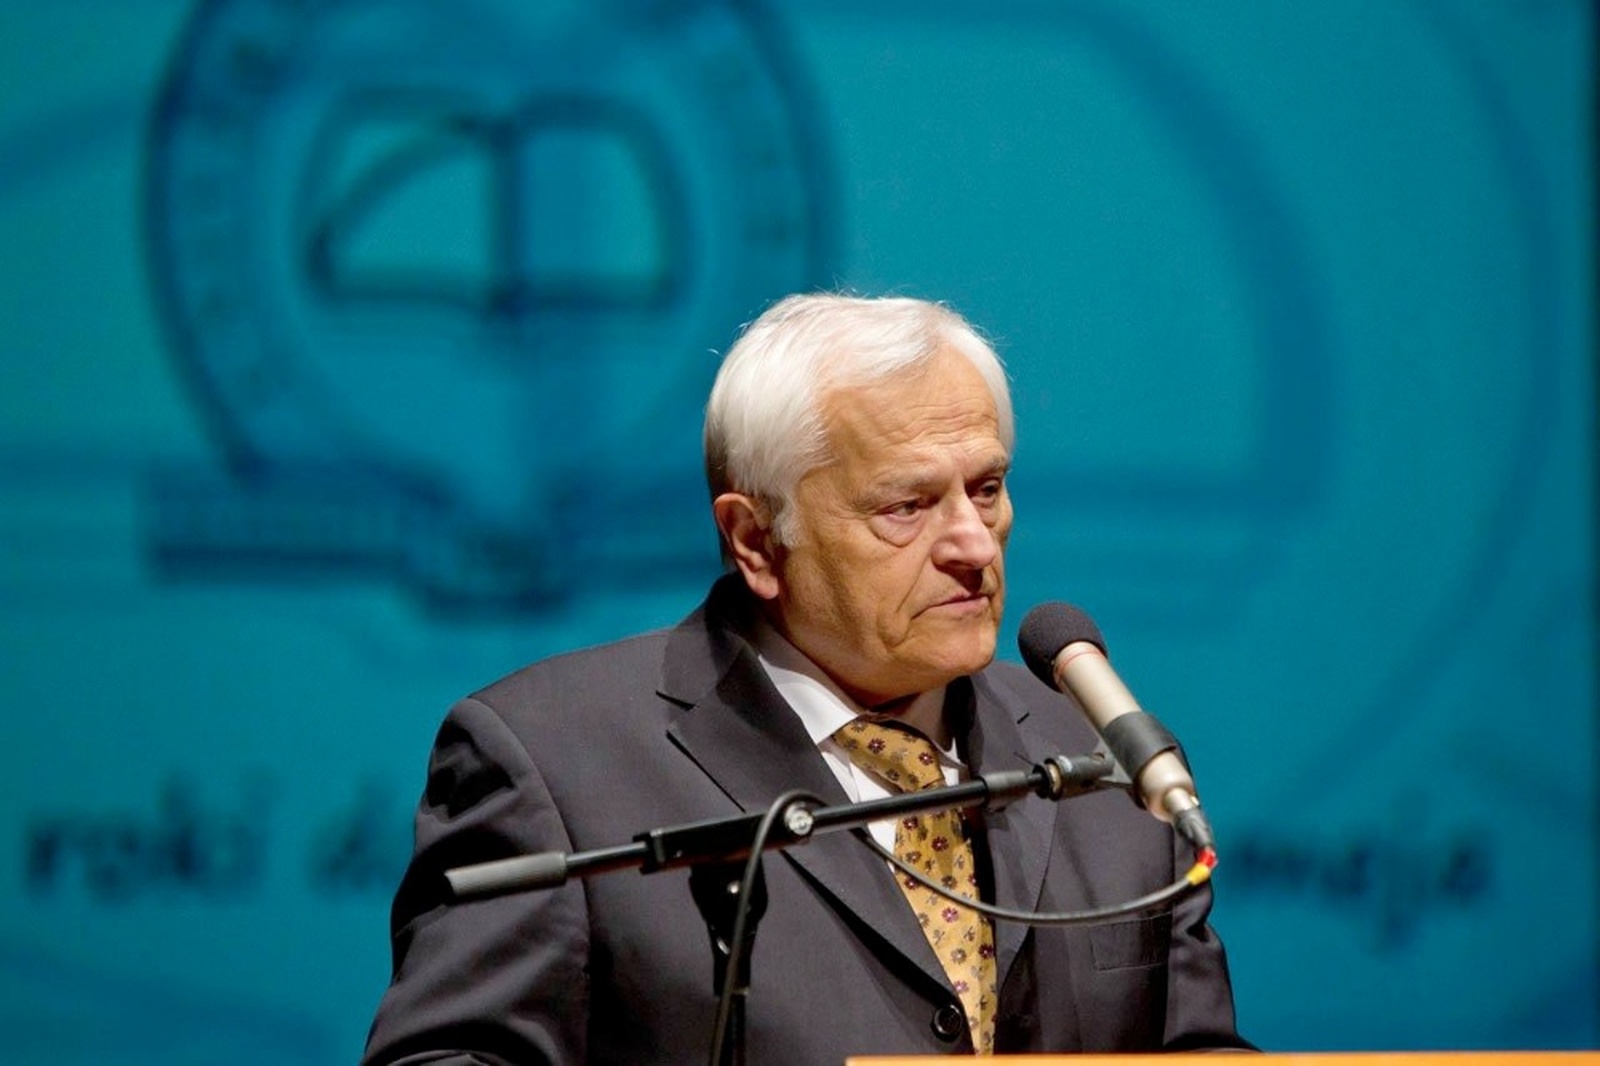 Slavnostni govornik akad. prof. dr. Jože Trontelj, predsednik Slovenske akademije znanosti in umetnosti. Foto atelje Postojna